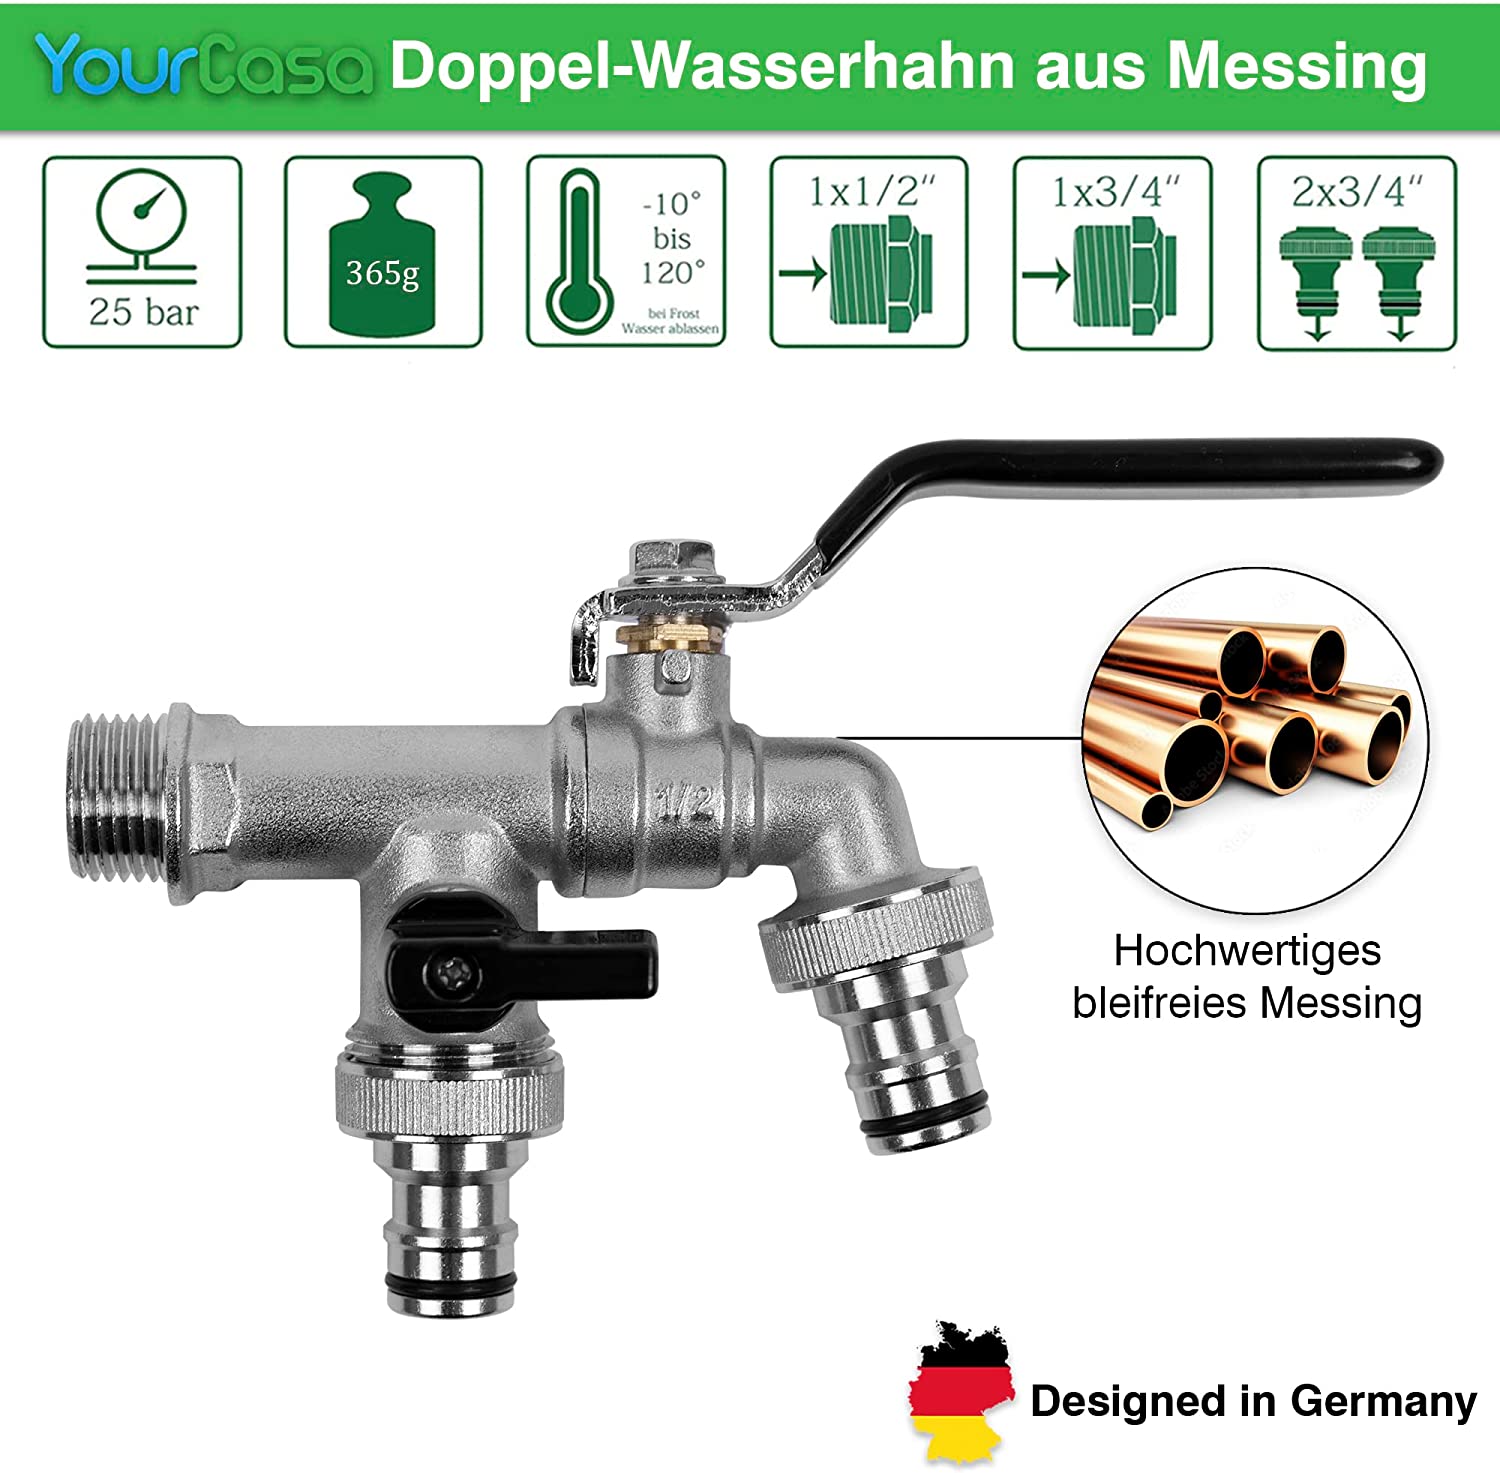 Doppelter YourCasa® Kugelauslaufhahn aus Messing mit separaten Ausläufen und Hebelgriffen, entworfen in Deutschland.